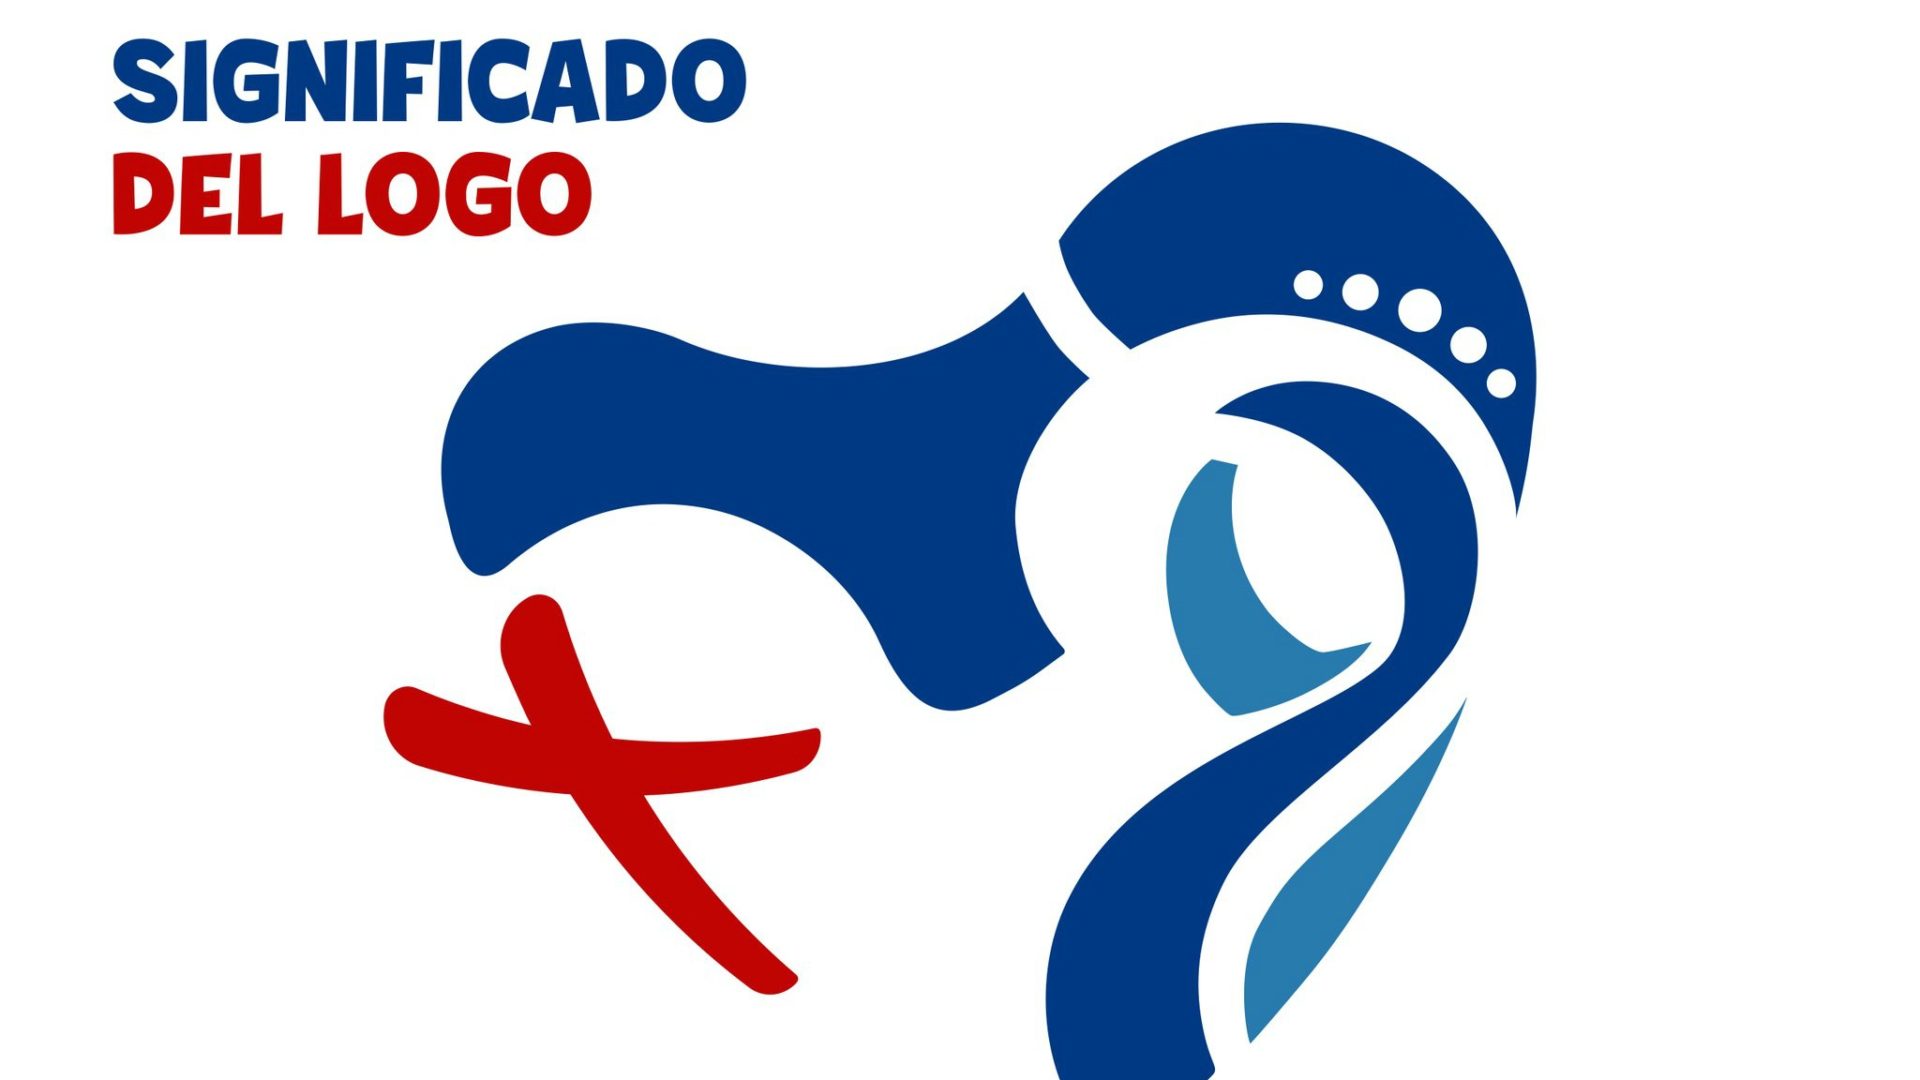 Le logo des JMJ 2019 présente des symboles de la Vierge et du Panama (Photo: arquidiocesis de Panama)